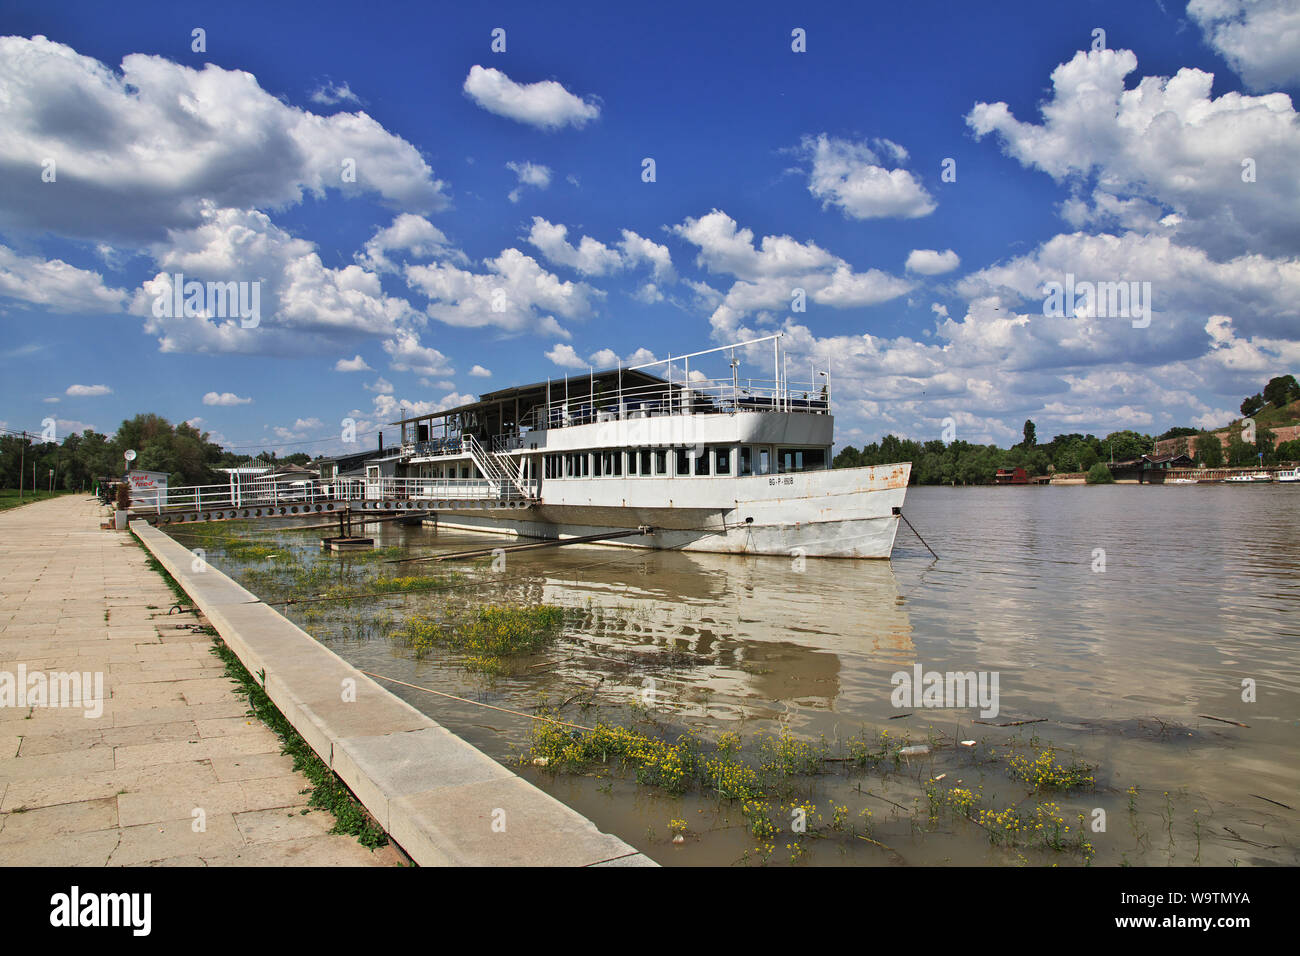 The ship on Danube river, Belgrade Stock Photo